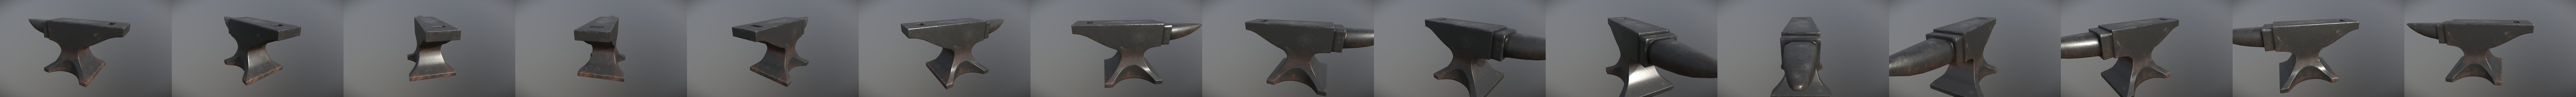 auténtico herrero forja metal sobre el yunque. tradiciones medievales  5459895 Foto de stock en Vecteezy